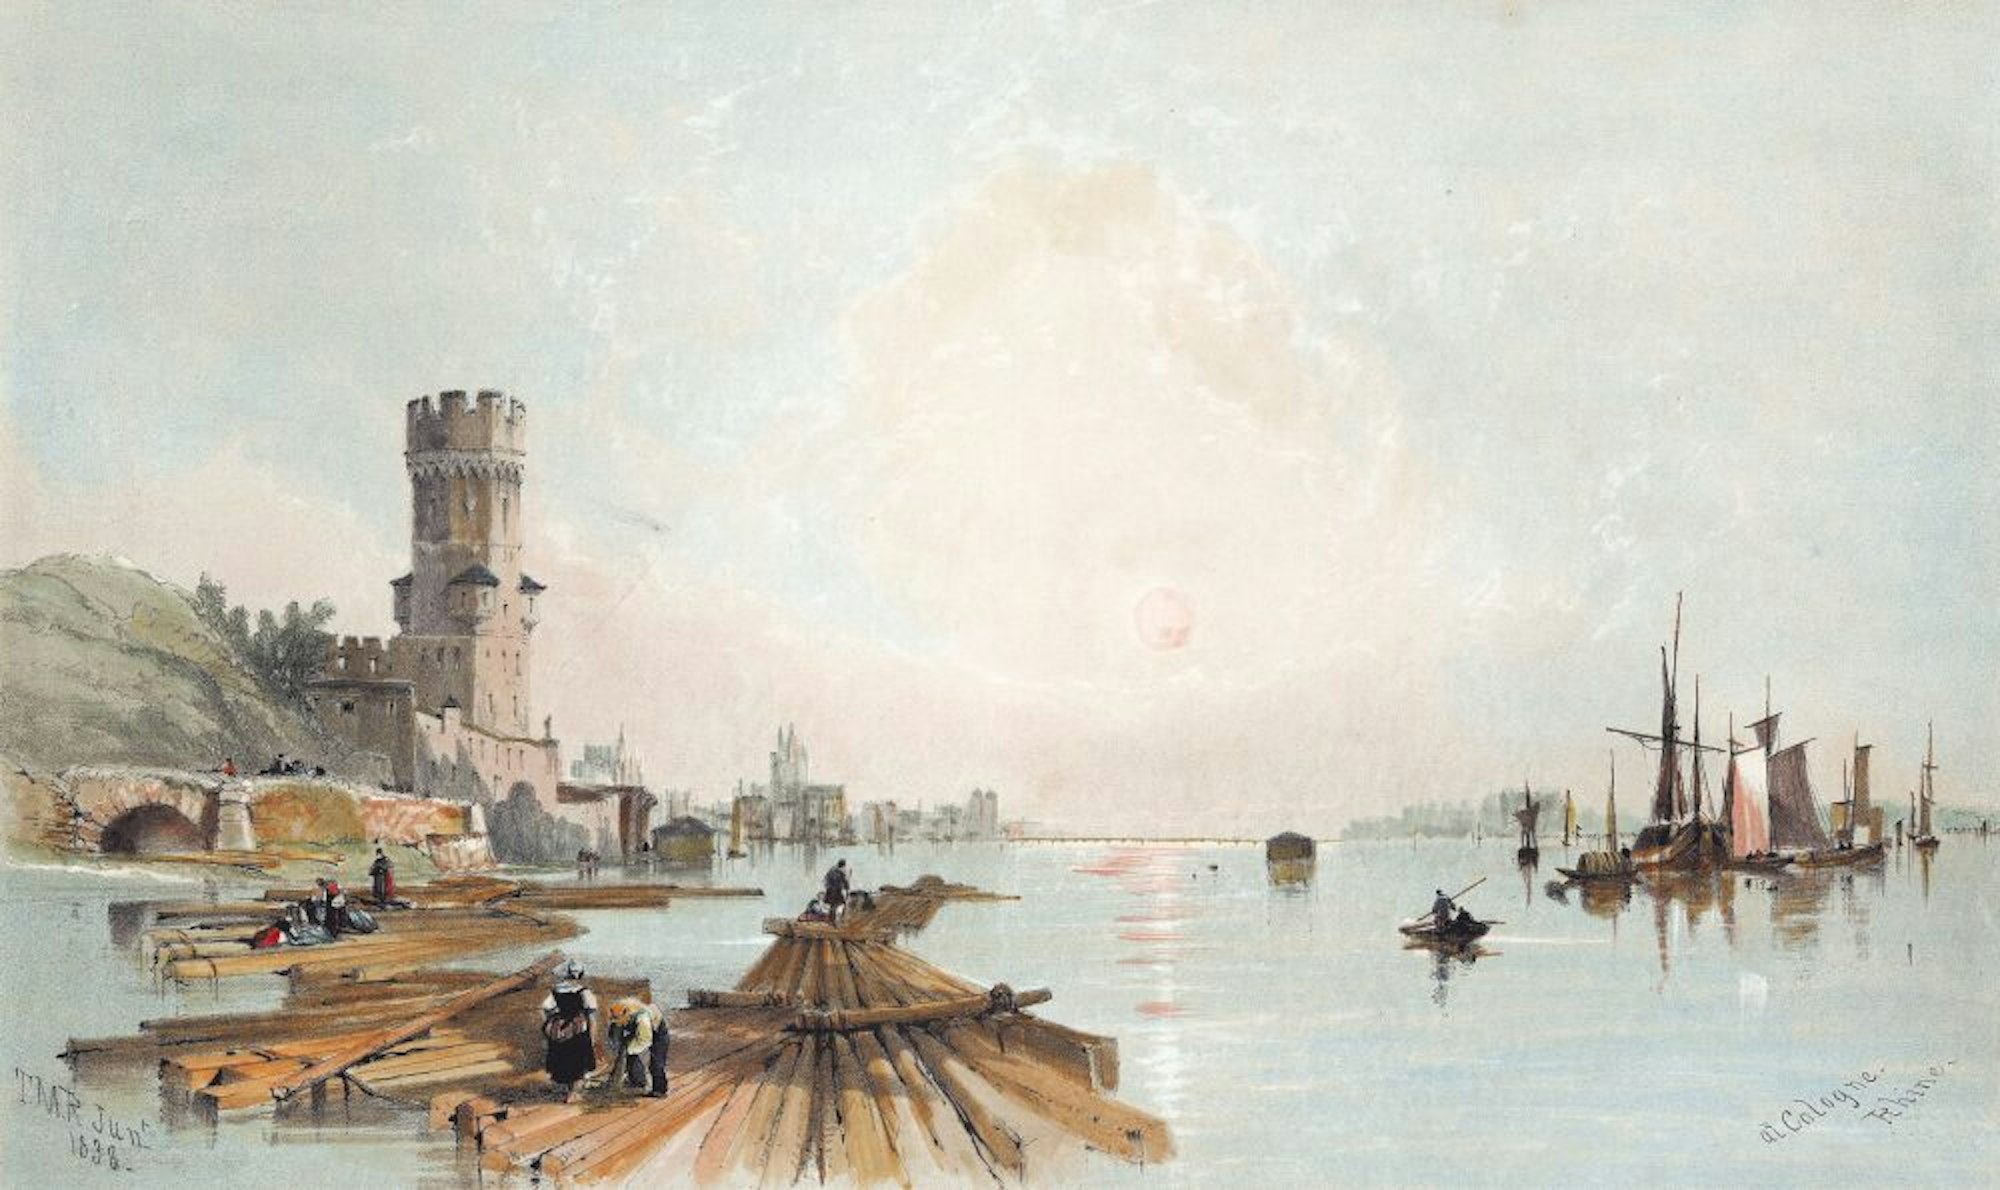 Der Bayenturm und der Rhein als prägende Ansichten: Flößer am Fluss. Thomas Miles Richardson, 1838.